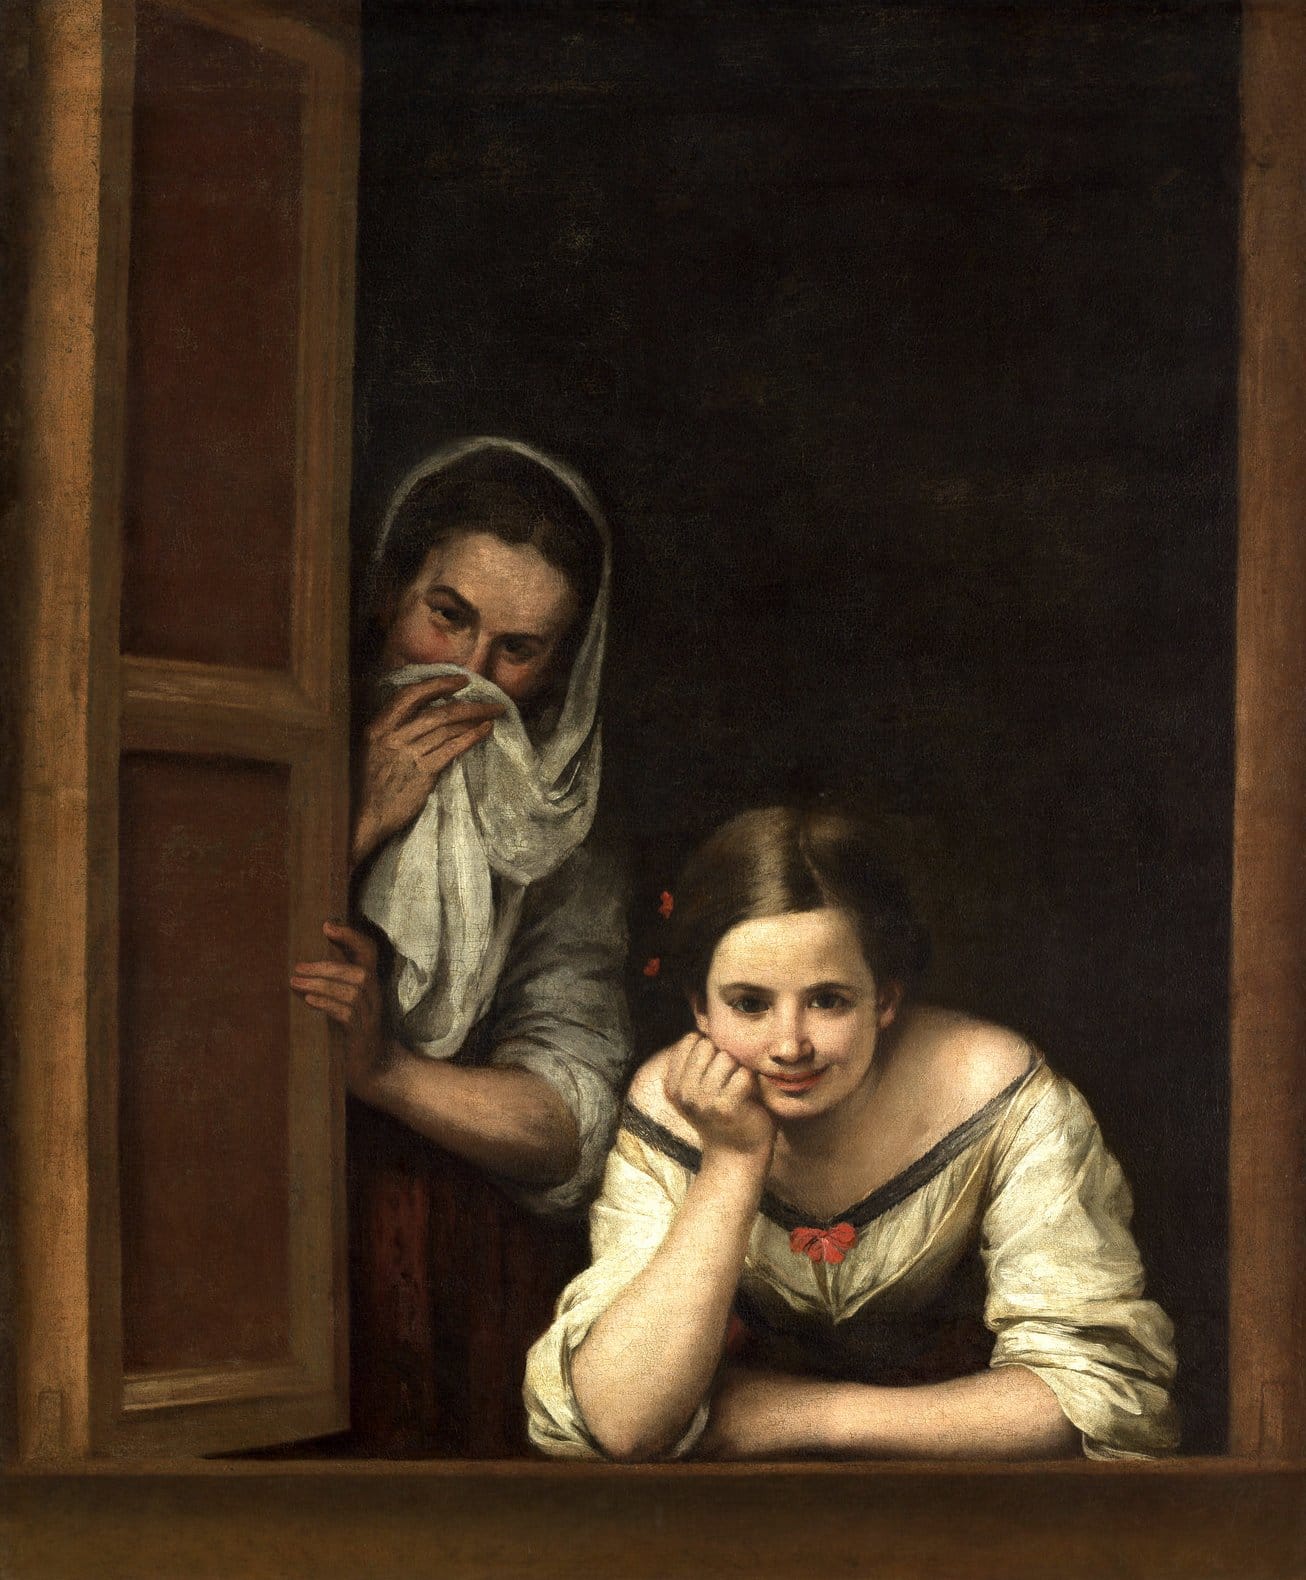 Бартоломе Эстебан Мурильо. Две женщины у окна.